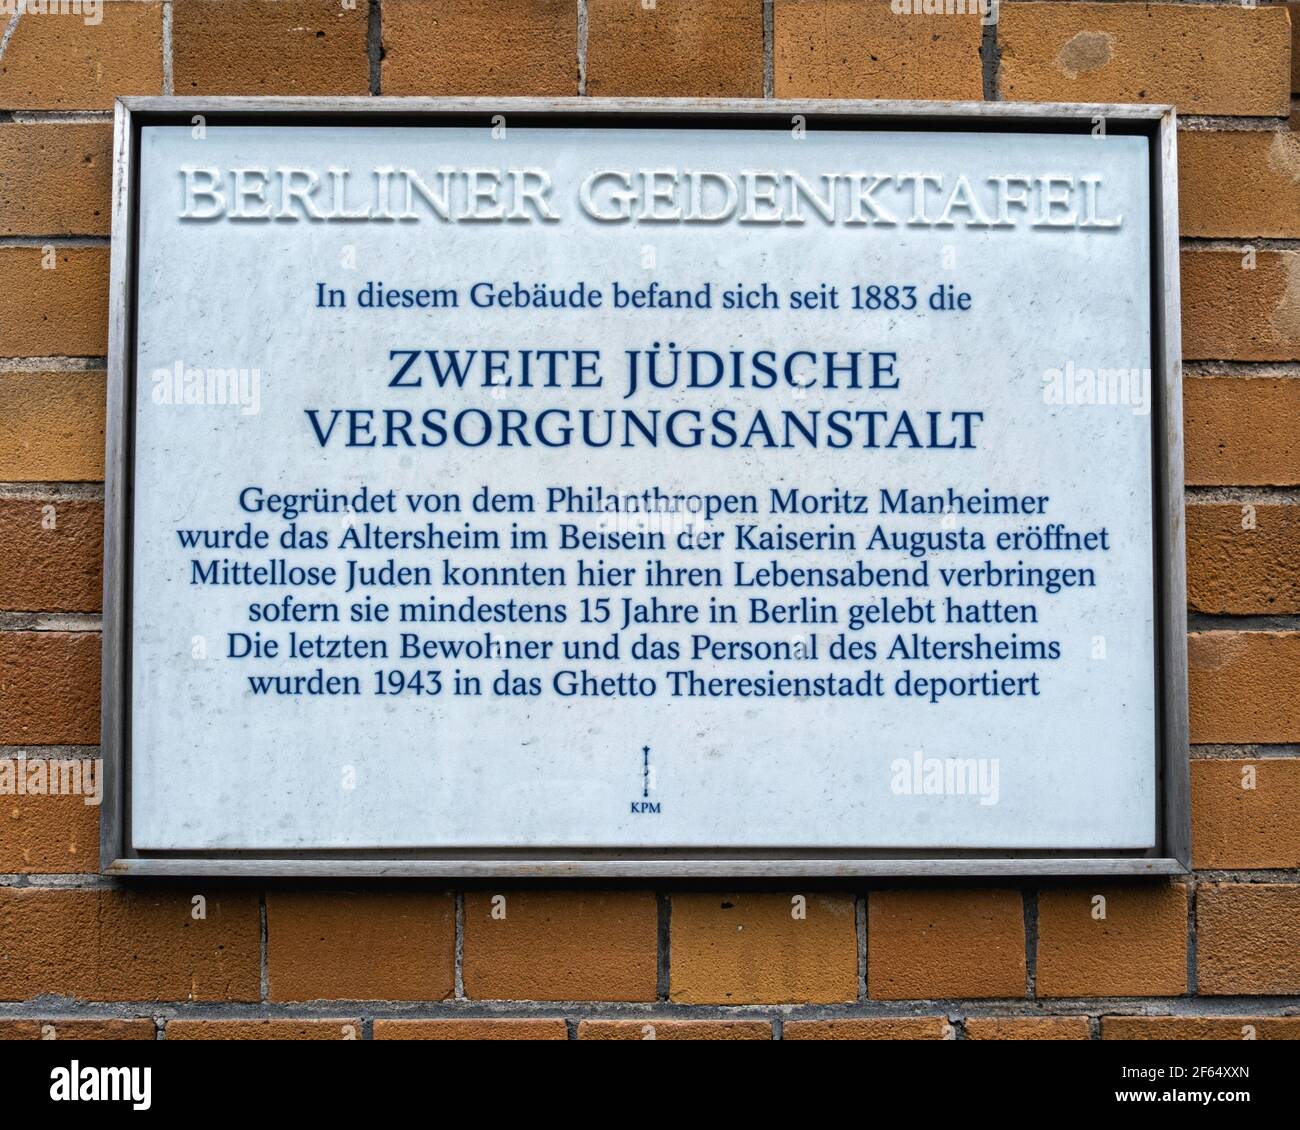 Zweite Jüdische Versorgungsanstalt.Memorial plaque of Jewish Retirement home founded by philanthropist Moritz Manheimer, Schönhauser Allee 22,Berlin Stock Photo